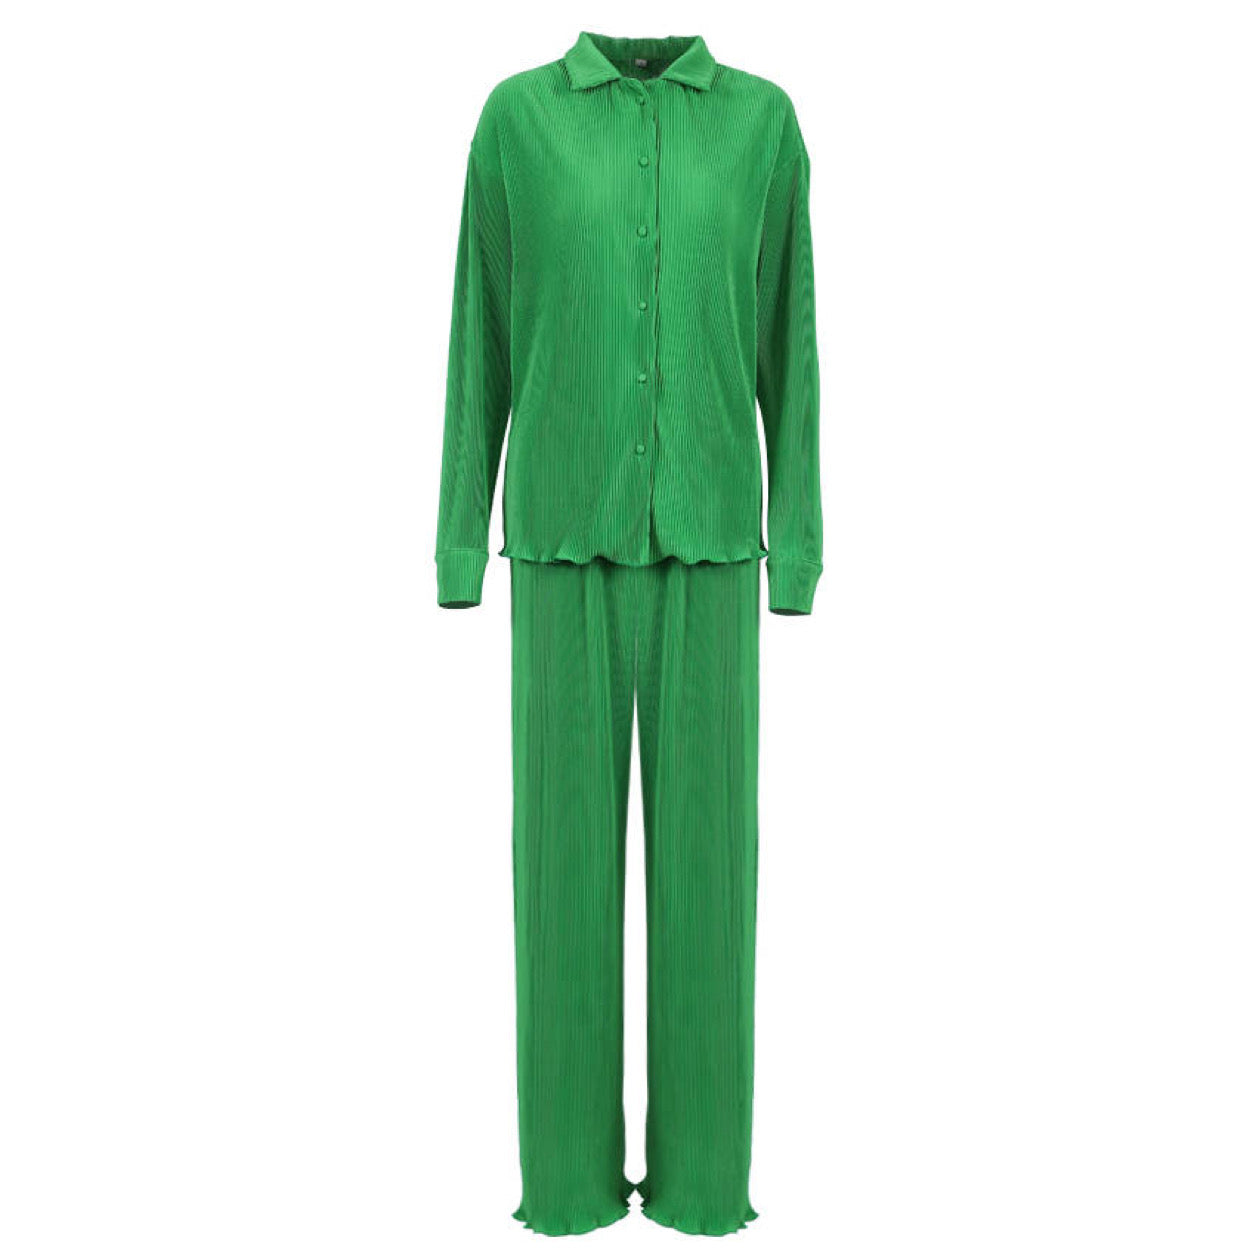 Green wide leg and shirt set